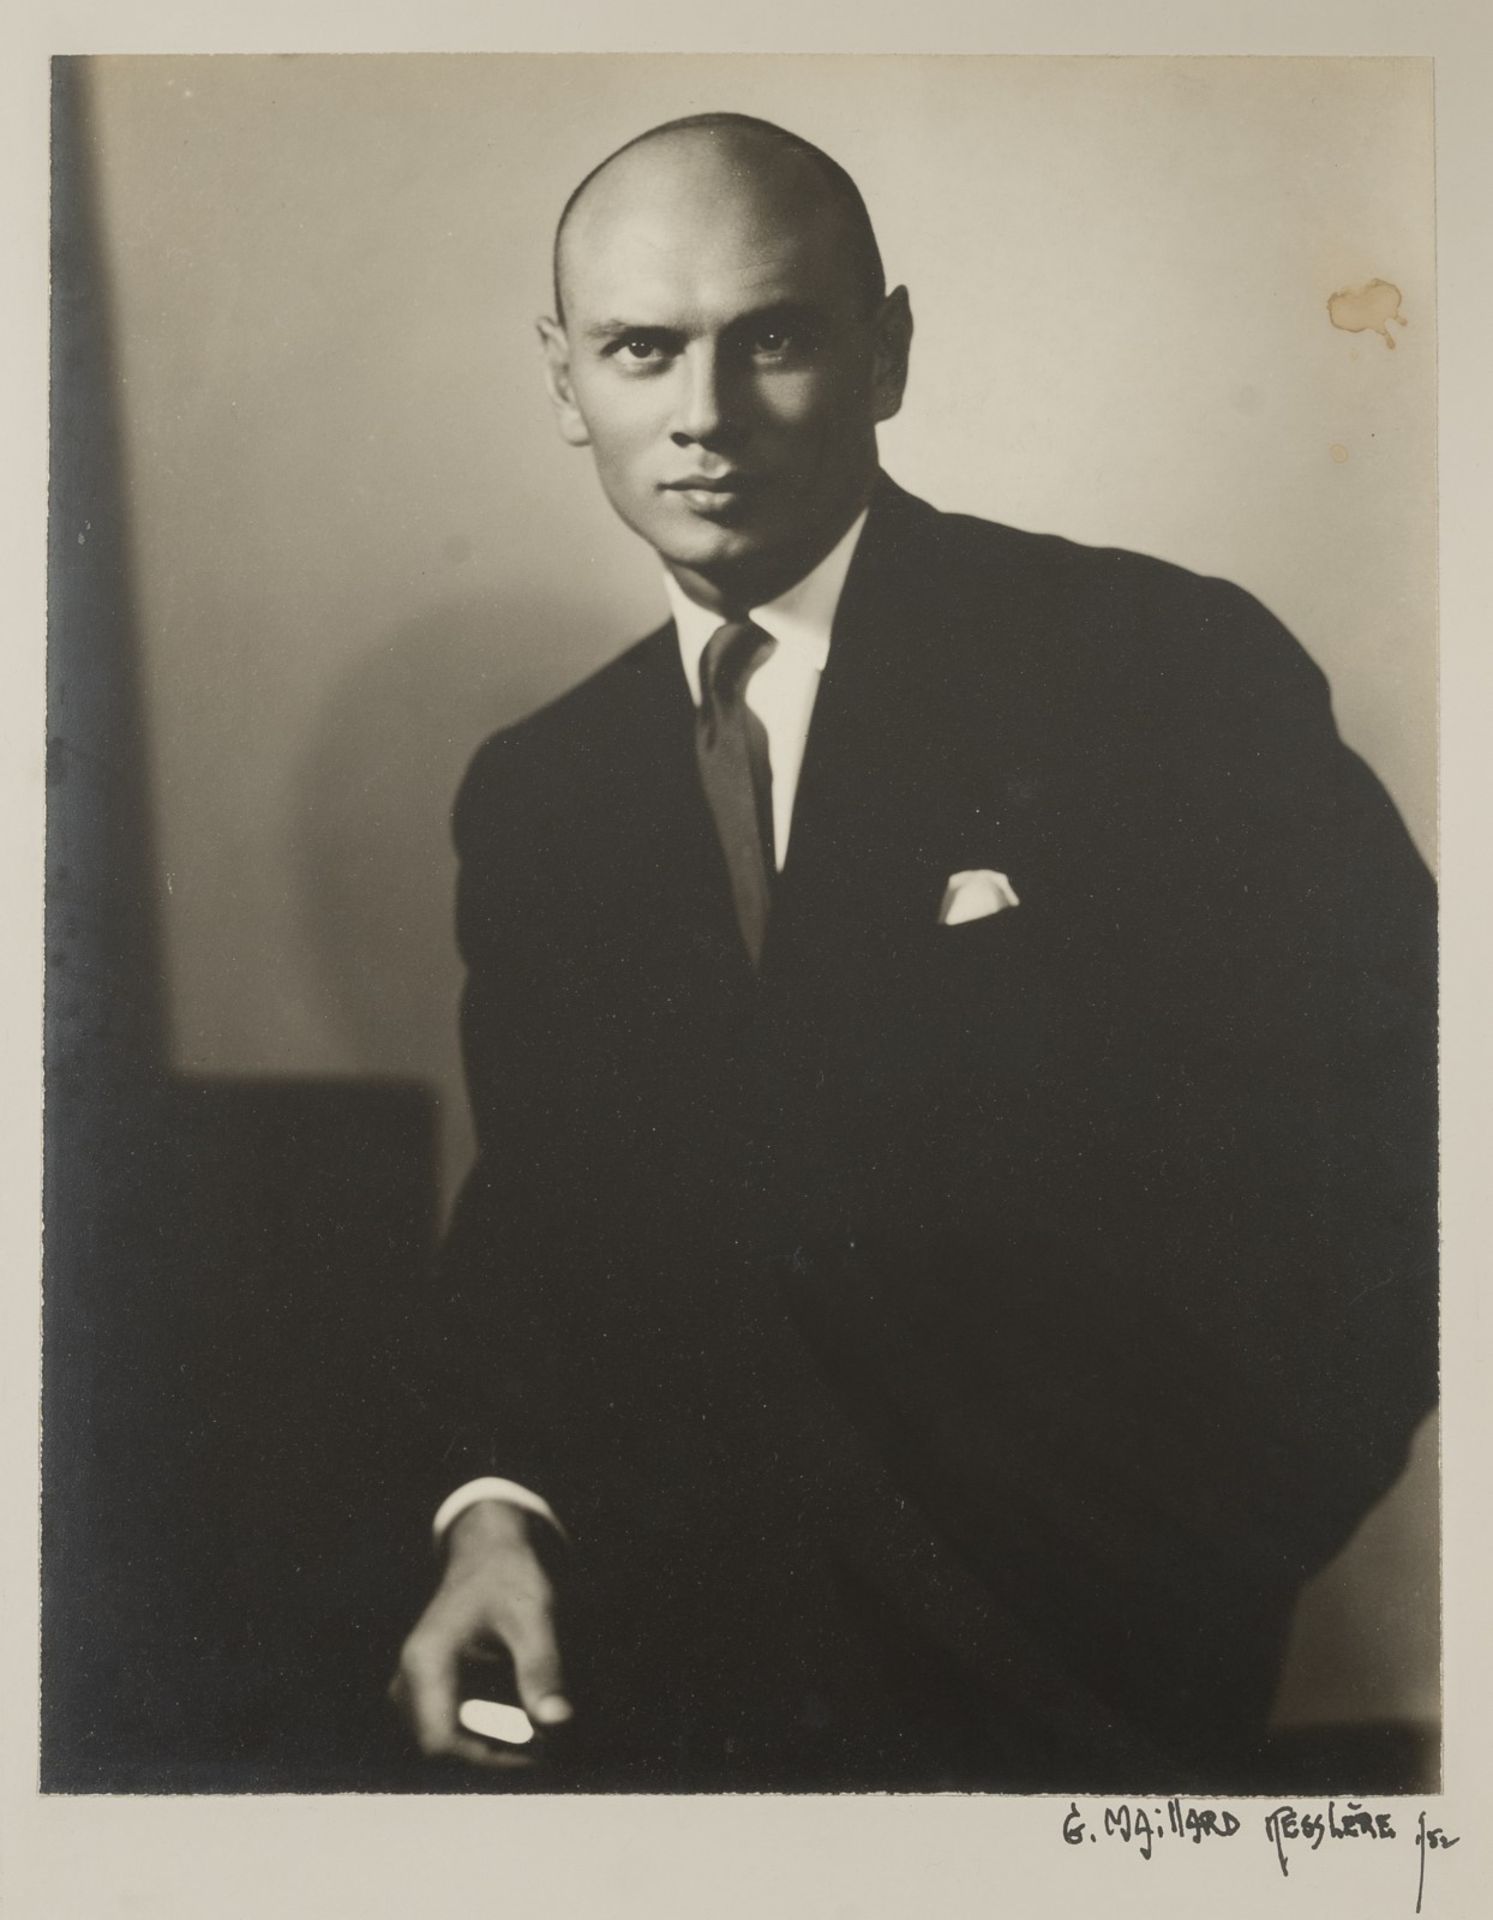 George MAILLARD KESSLERE (1894-1979)